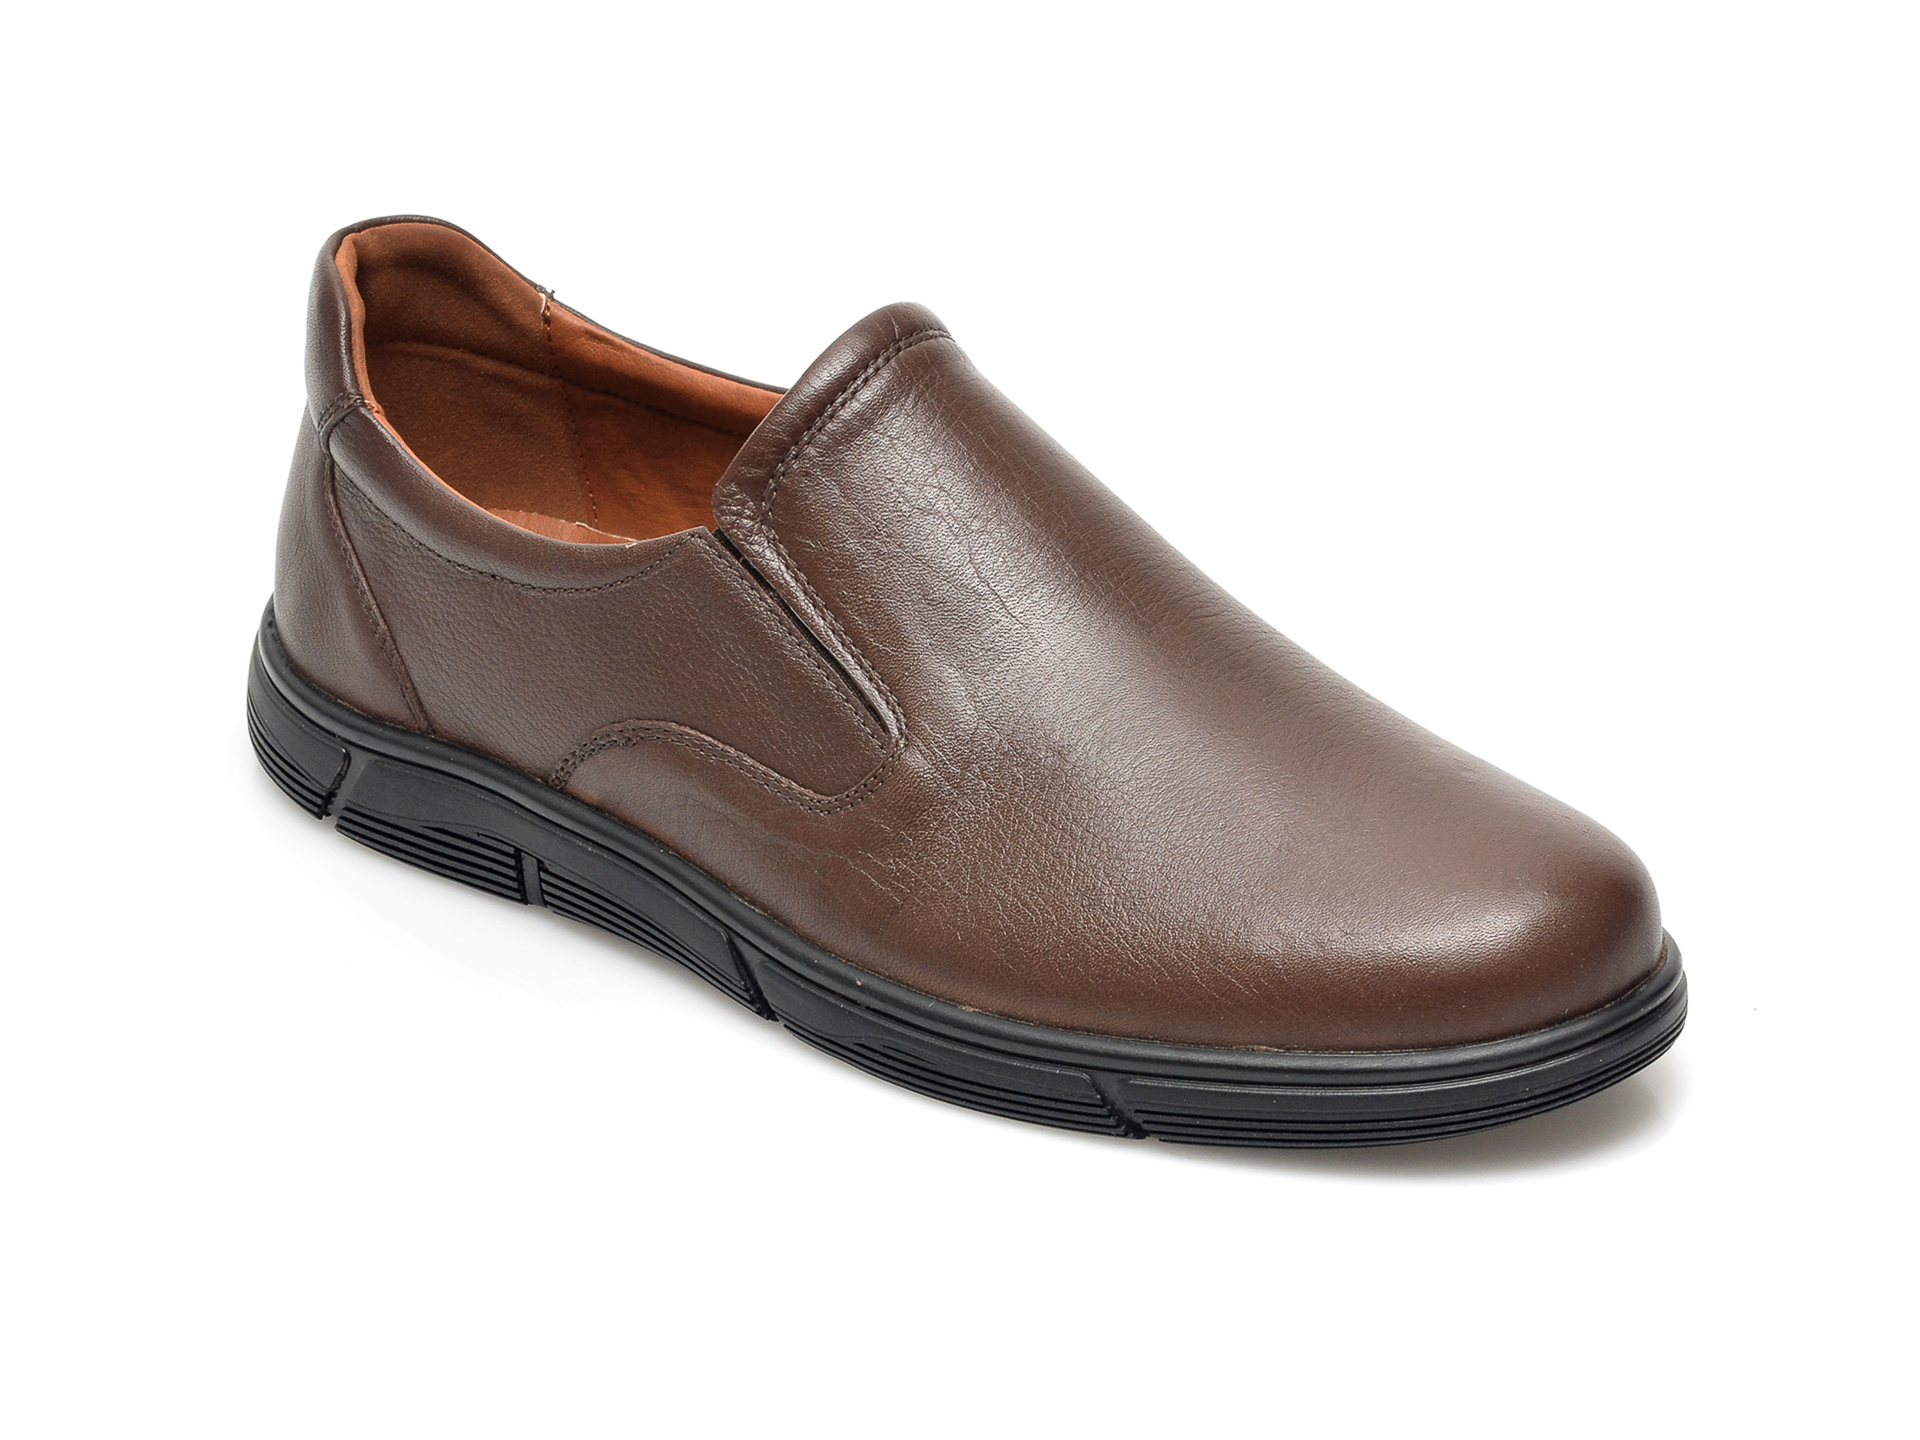 Pantofi POLARIS maro, 104060, din piele naturala otter.ro